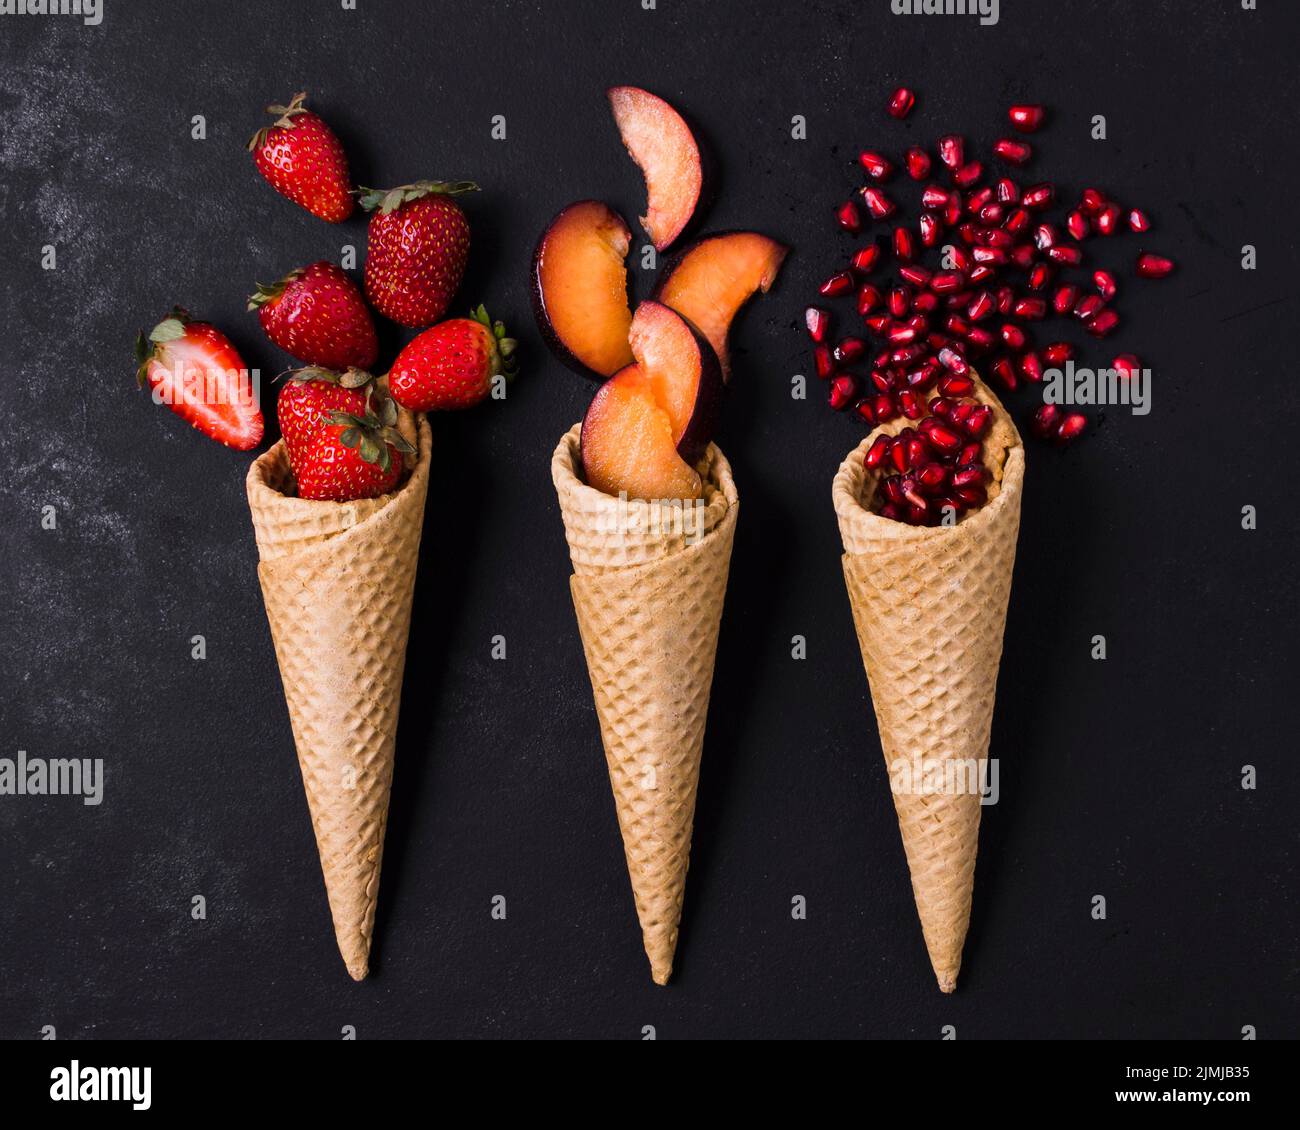 Ice cream cones with fruits Stock Photo